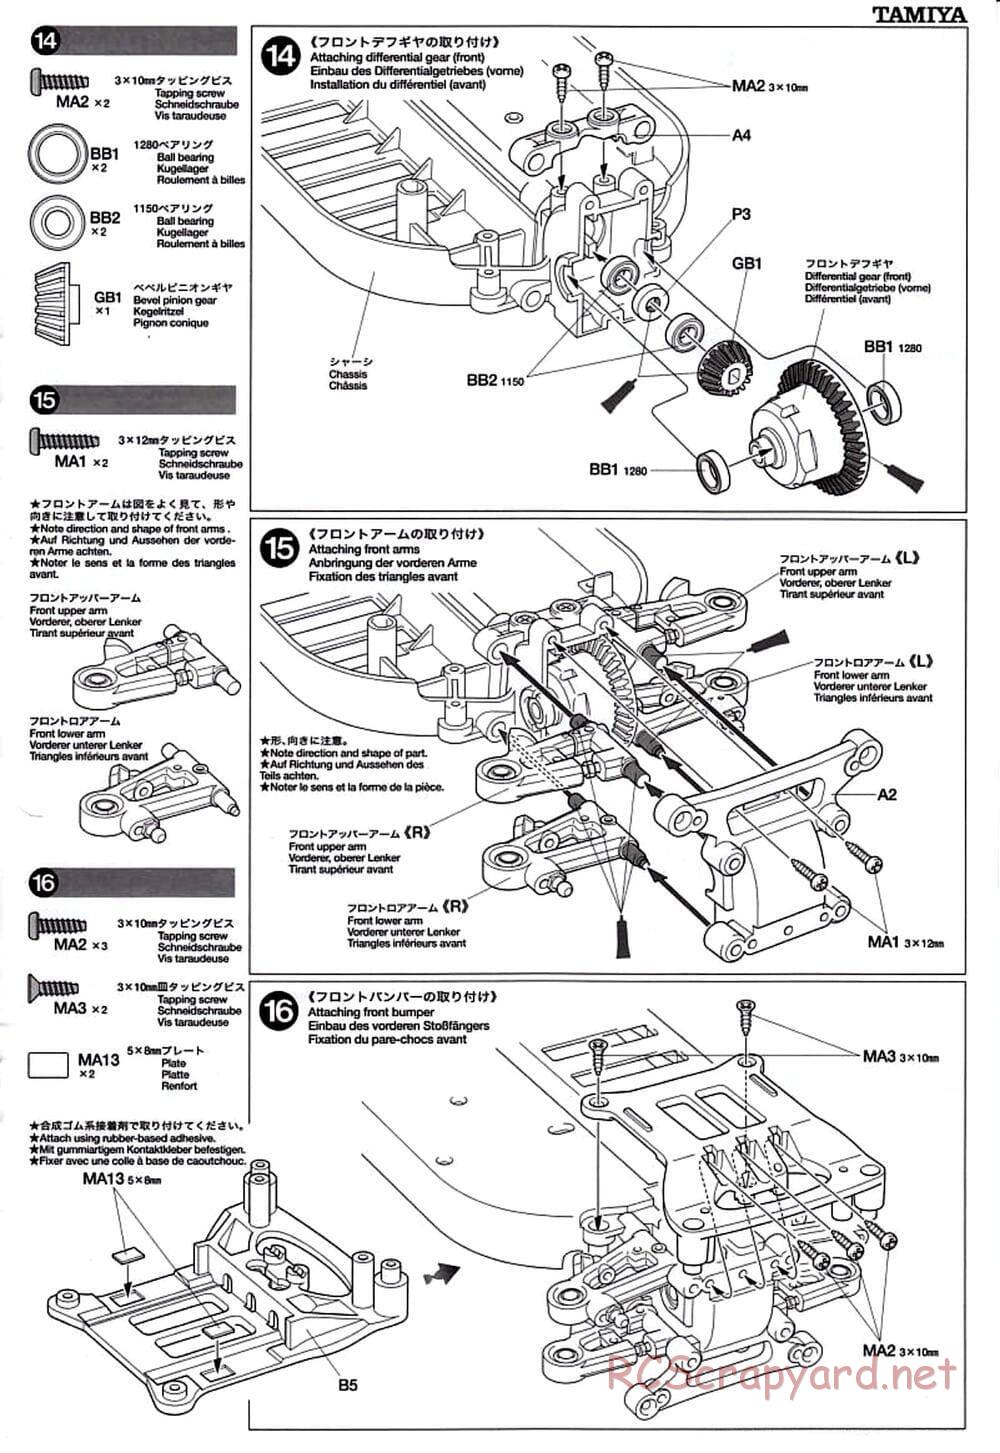 Tamiya - TT-01D Chassis - Manual - Page 9